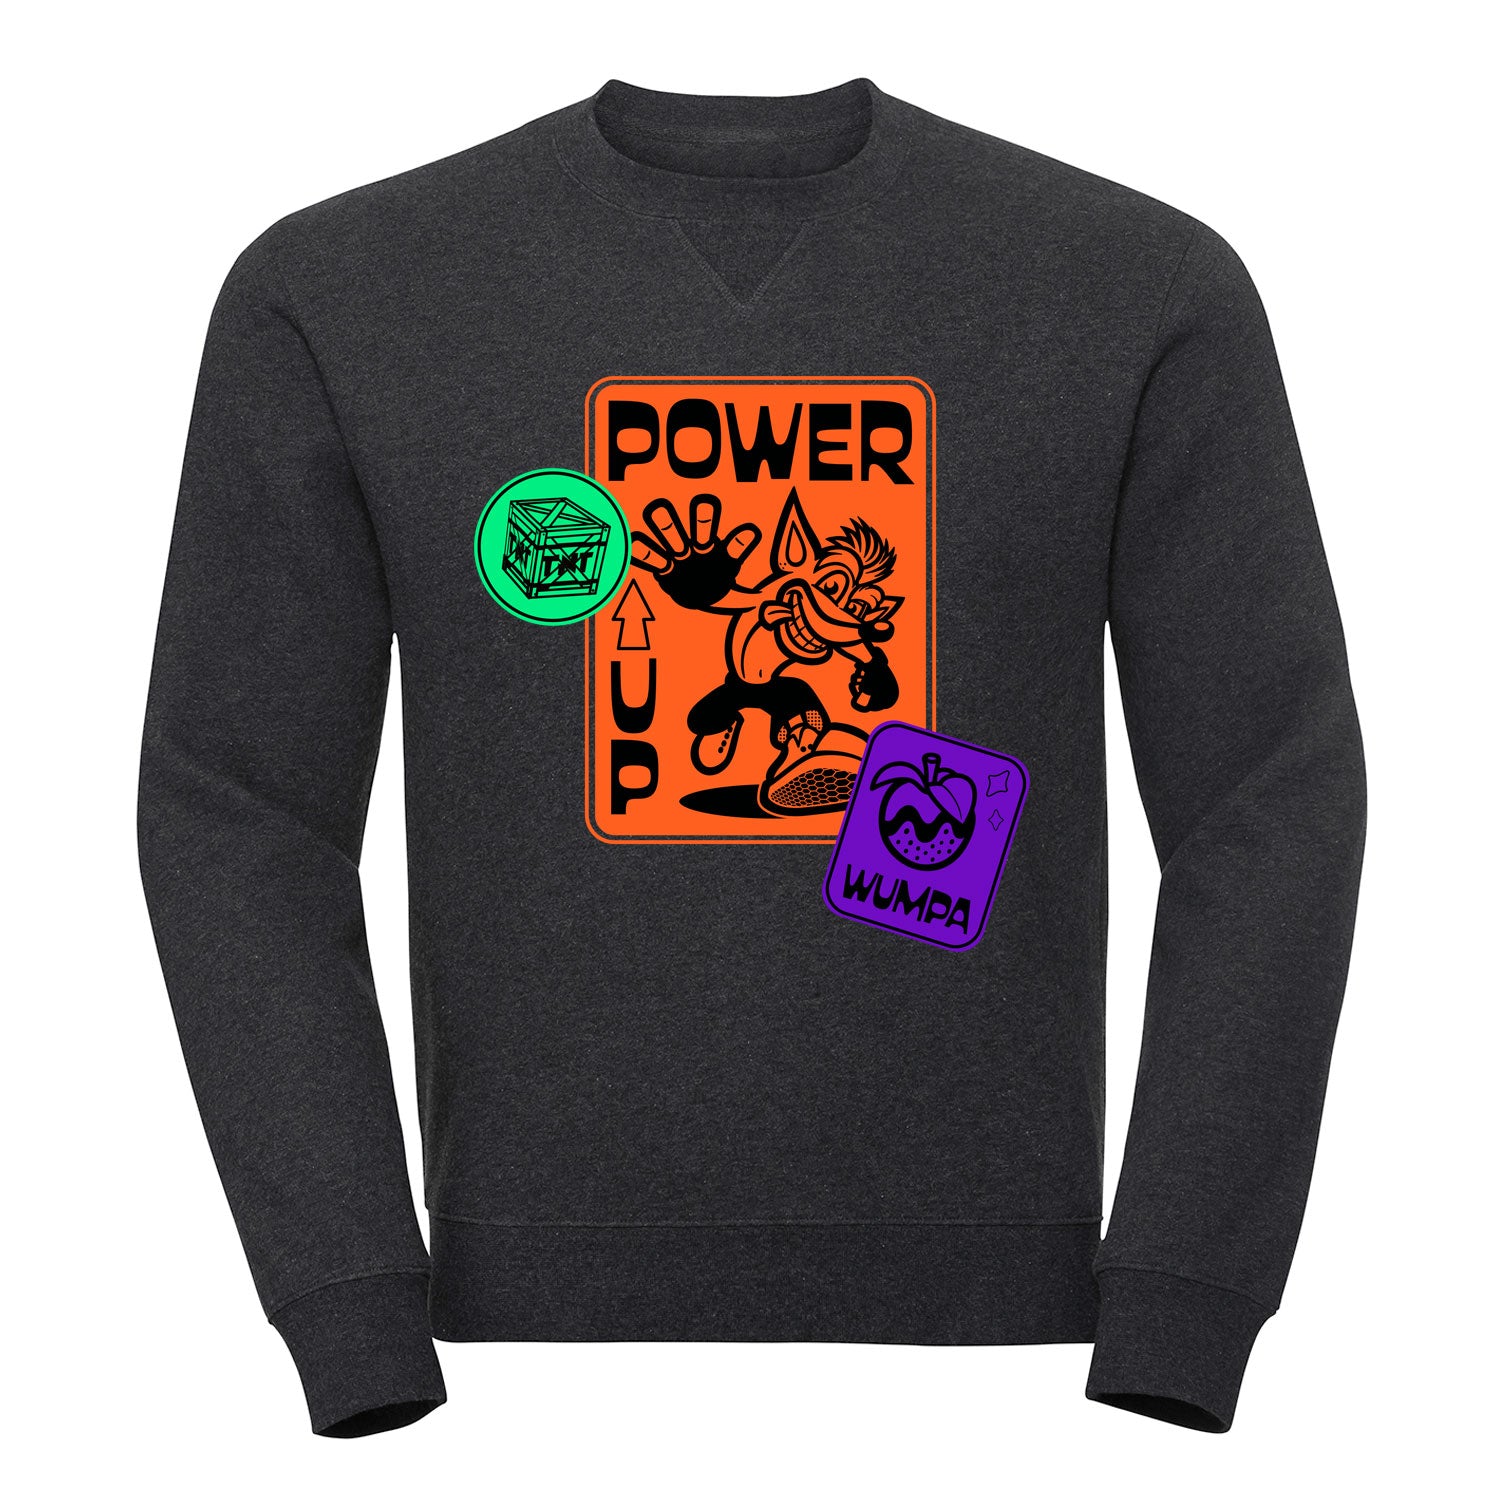 Crash Bandicoot Power Up Men's Sweatshirt, Wumpa and TNT design, casual fit grey jumper